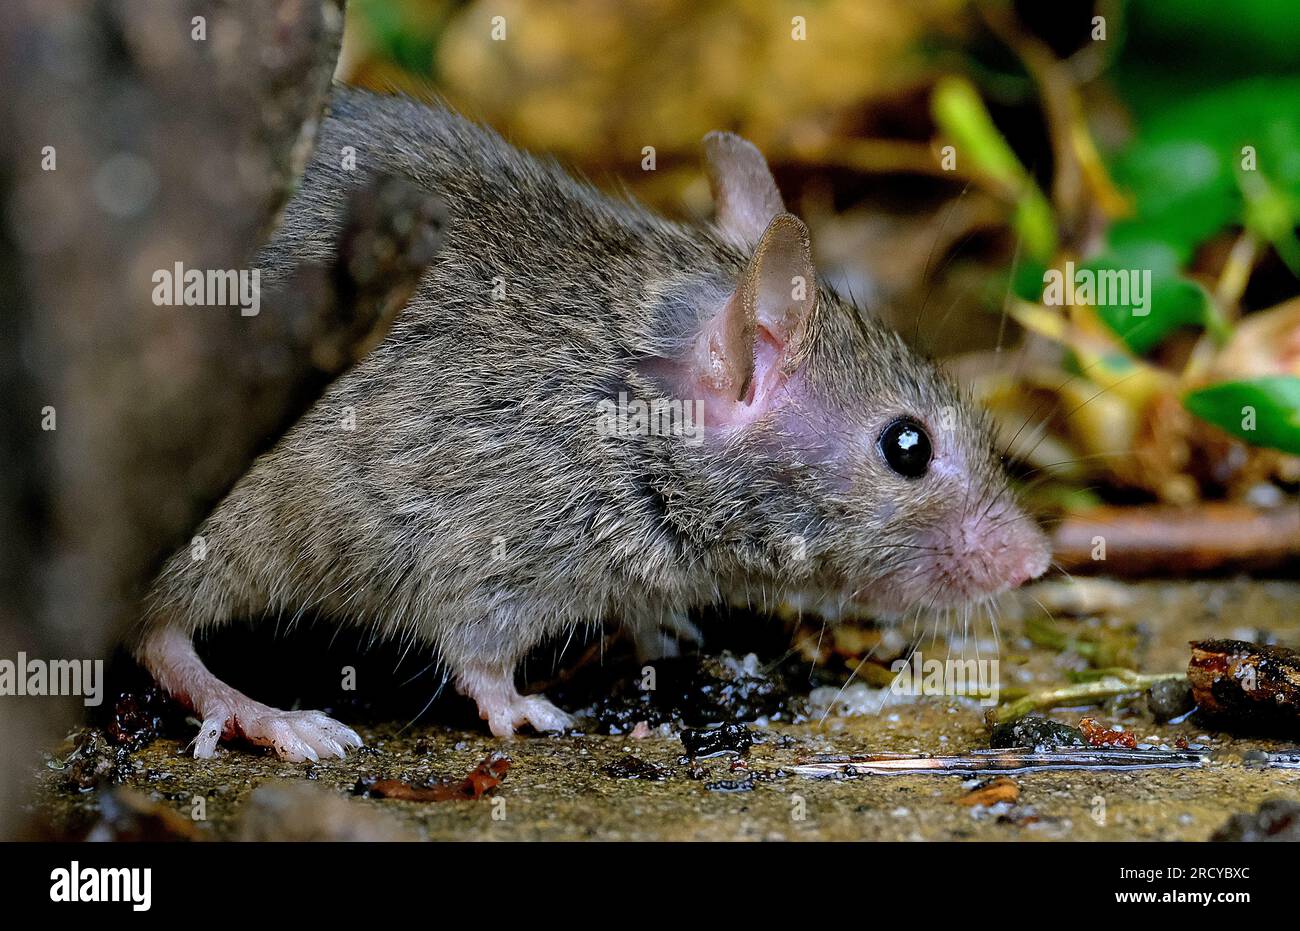 Une souris est un petit rongeur. De façon caractéristique, les souris sont connues pour avoir un museau pointu, de petites oreilles arrondies et une queue écailleuse à la longueur du corps. Banque D'Images